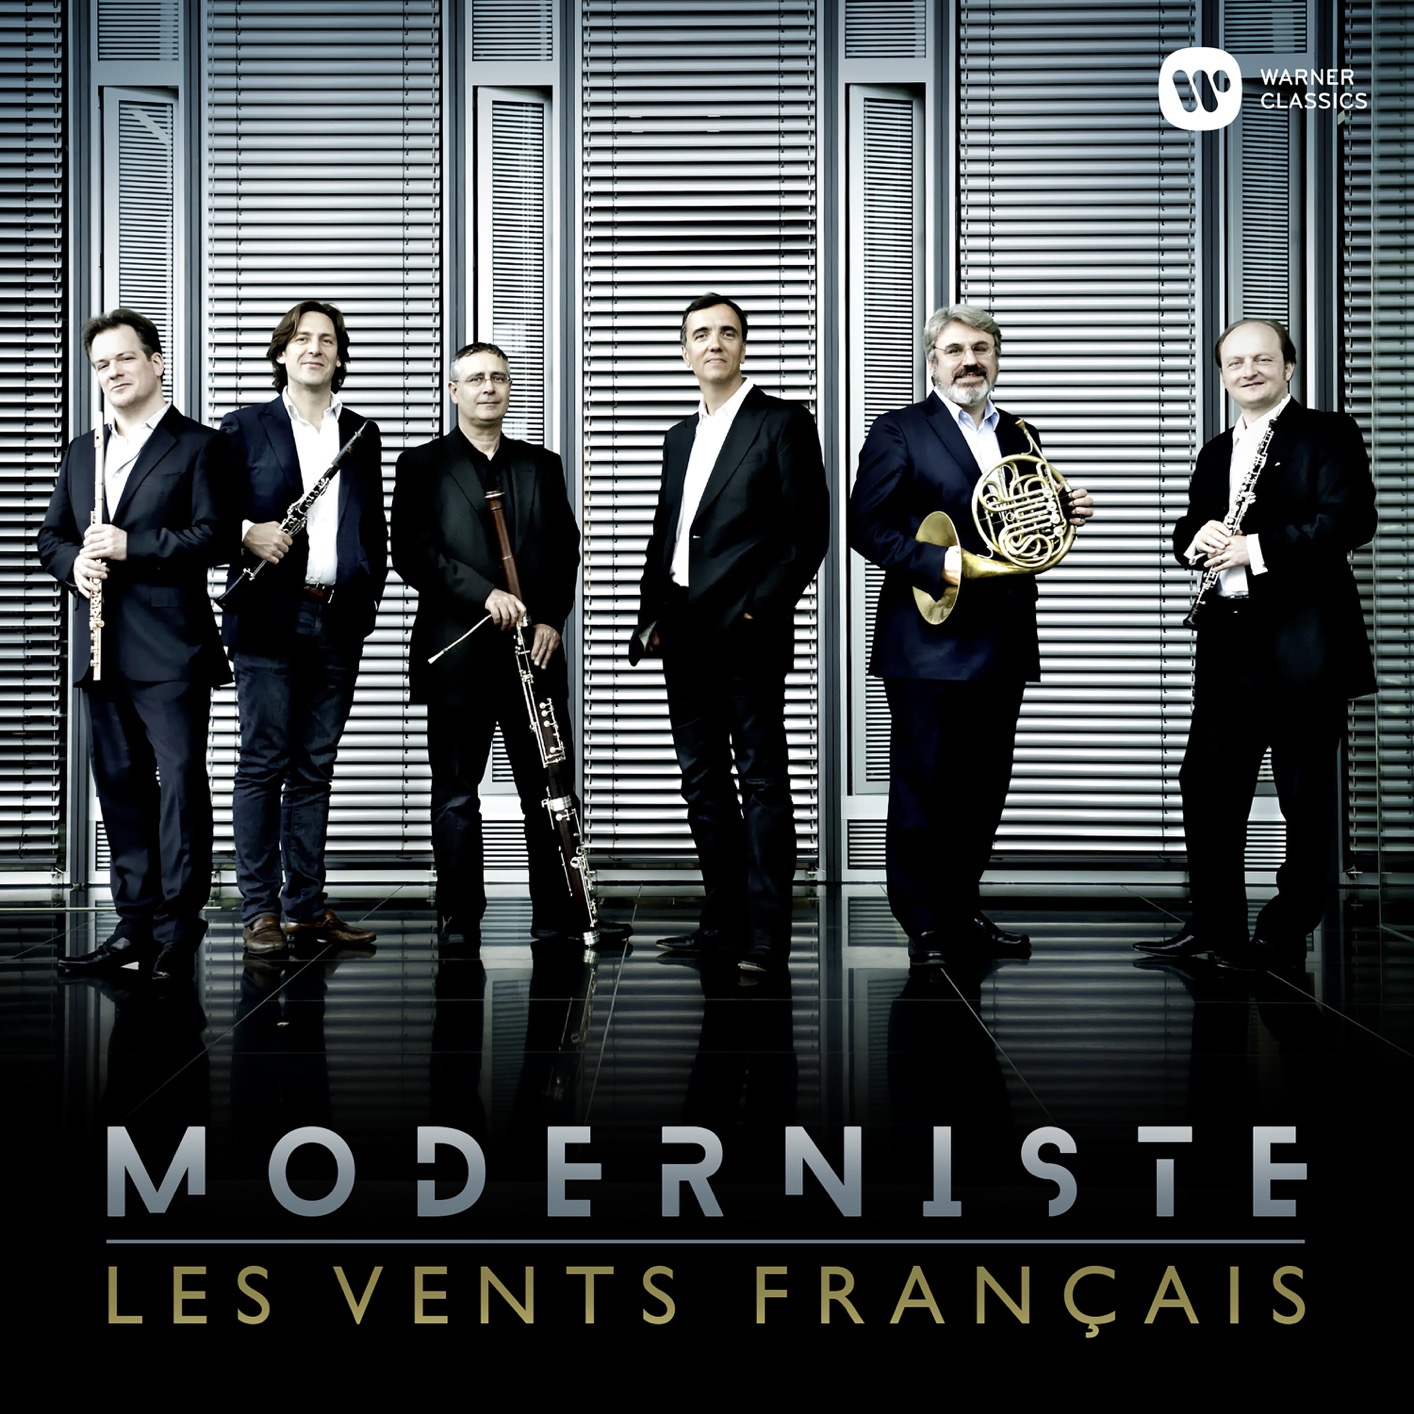 Les Vents Francais – Moderniste (2019) [FLAC 24bit/96kHz]